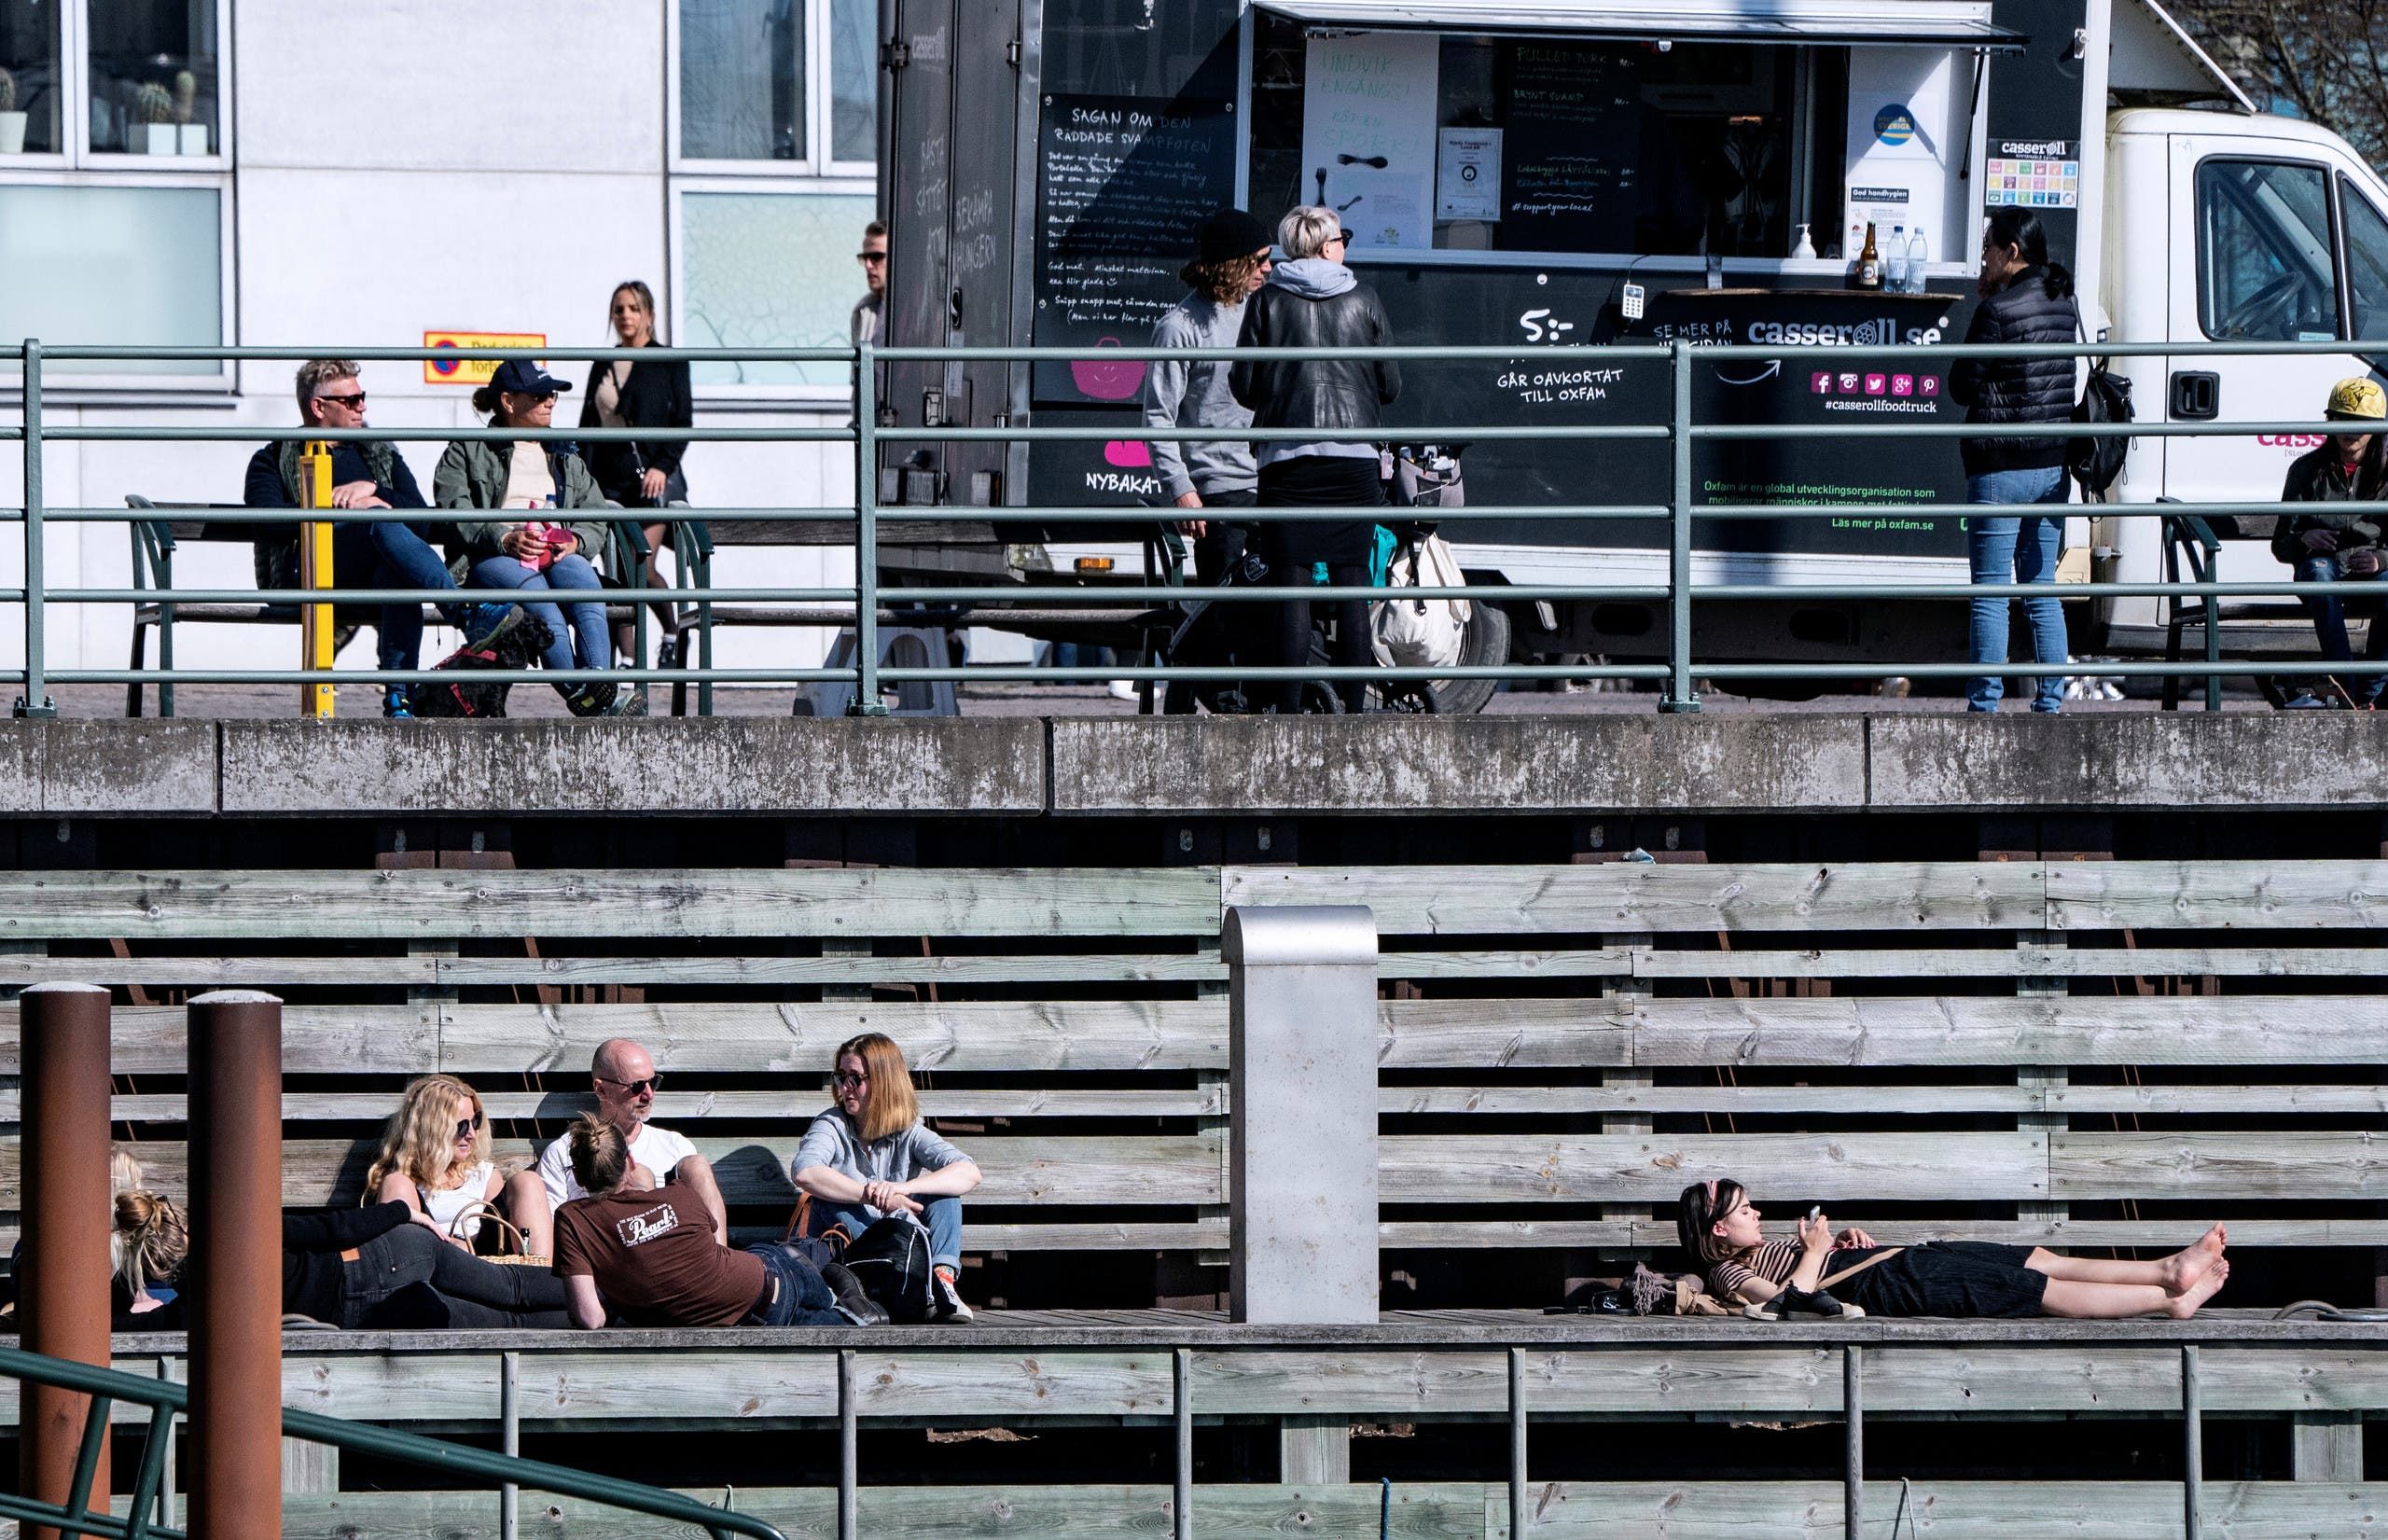 ازدحام في مالمو بالسويد حيث استمتع الناس أمس الأحد بالشمس بالهواء الطلق